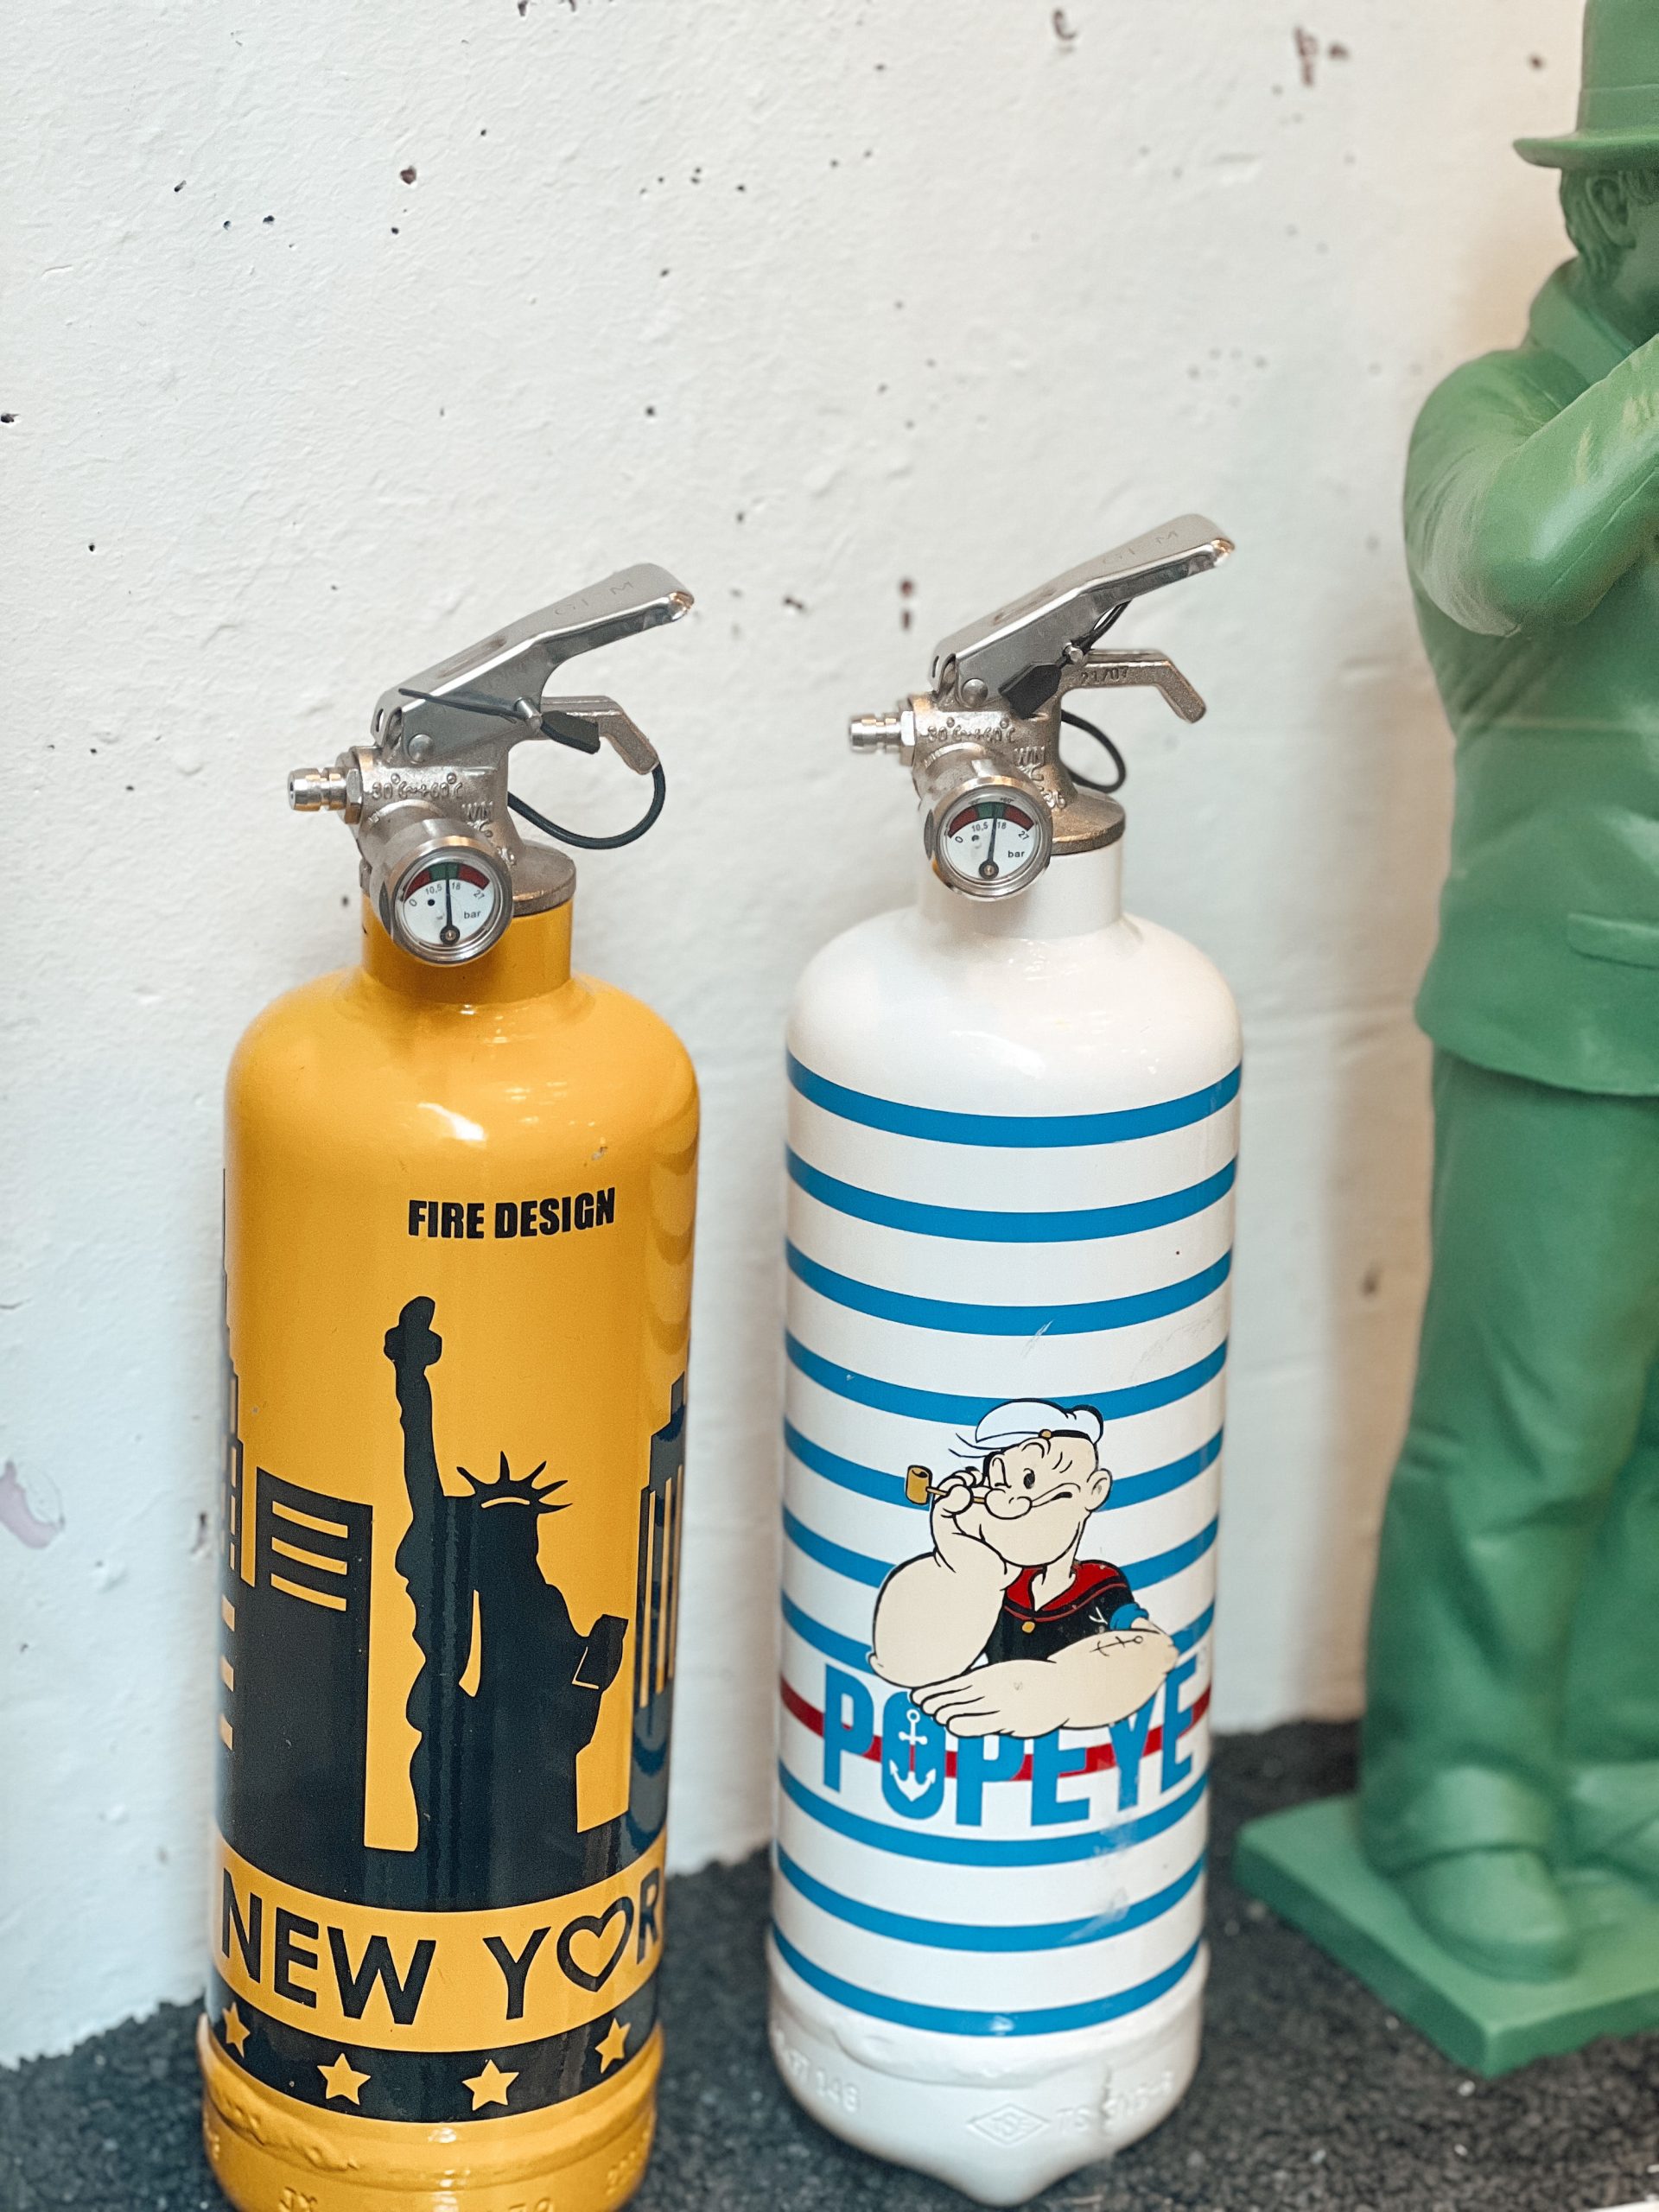 bunt lackierten Feuerlöscher: einmal im New York Fire Design und einmal mit Popeye Branding bei MuR - Design Store